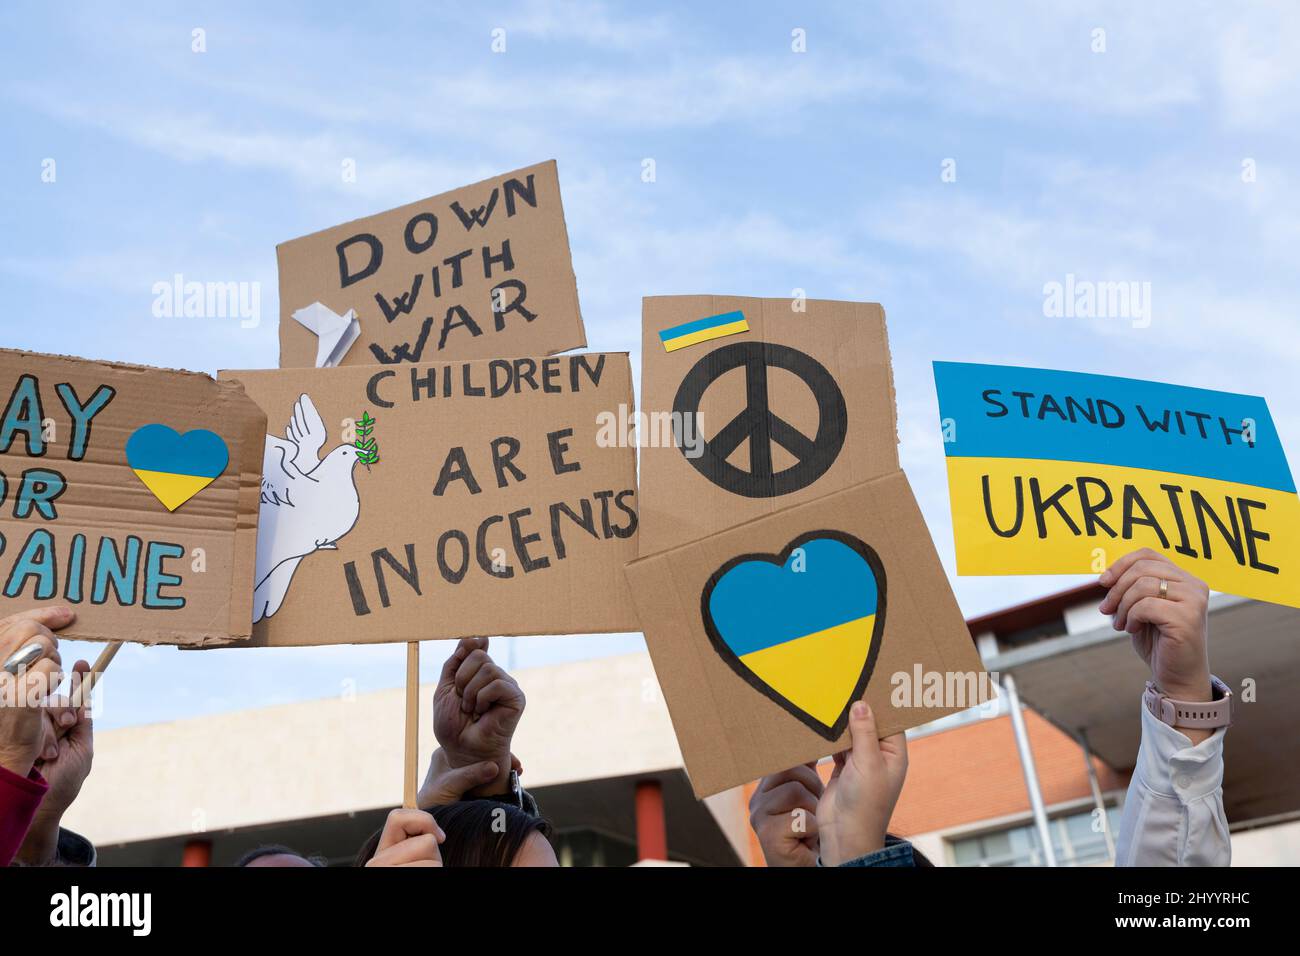 Diferentes banners en la manifestación de protesta contra la invasión rusa. Signo de paz, no de guerra, y mensajes de solidaridad y apoyo al Reino Unido Foto de stock